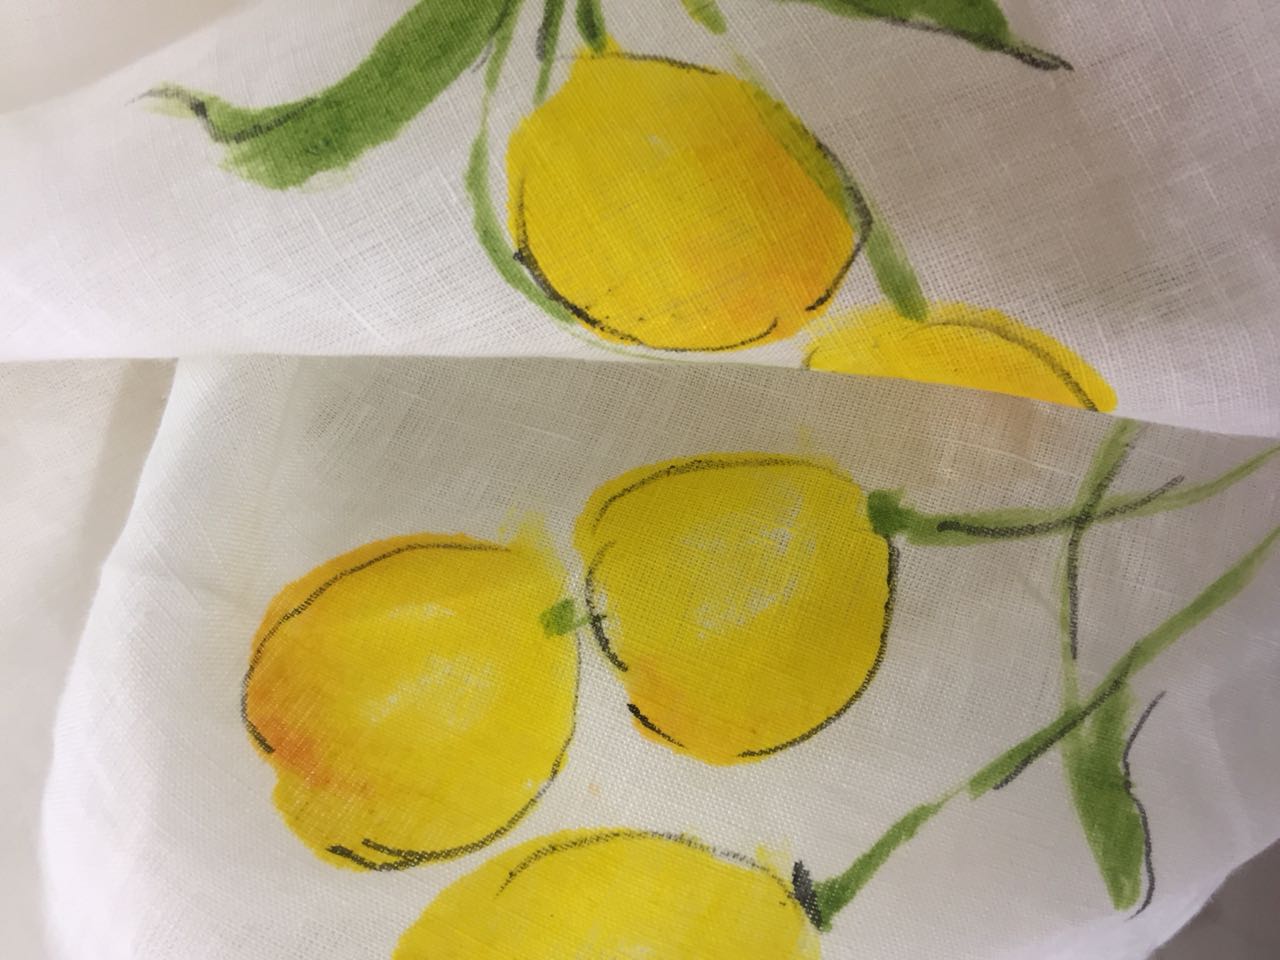 Tie up in Lemons